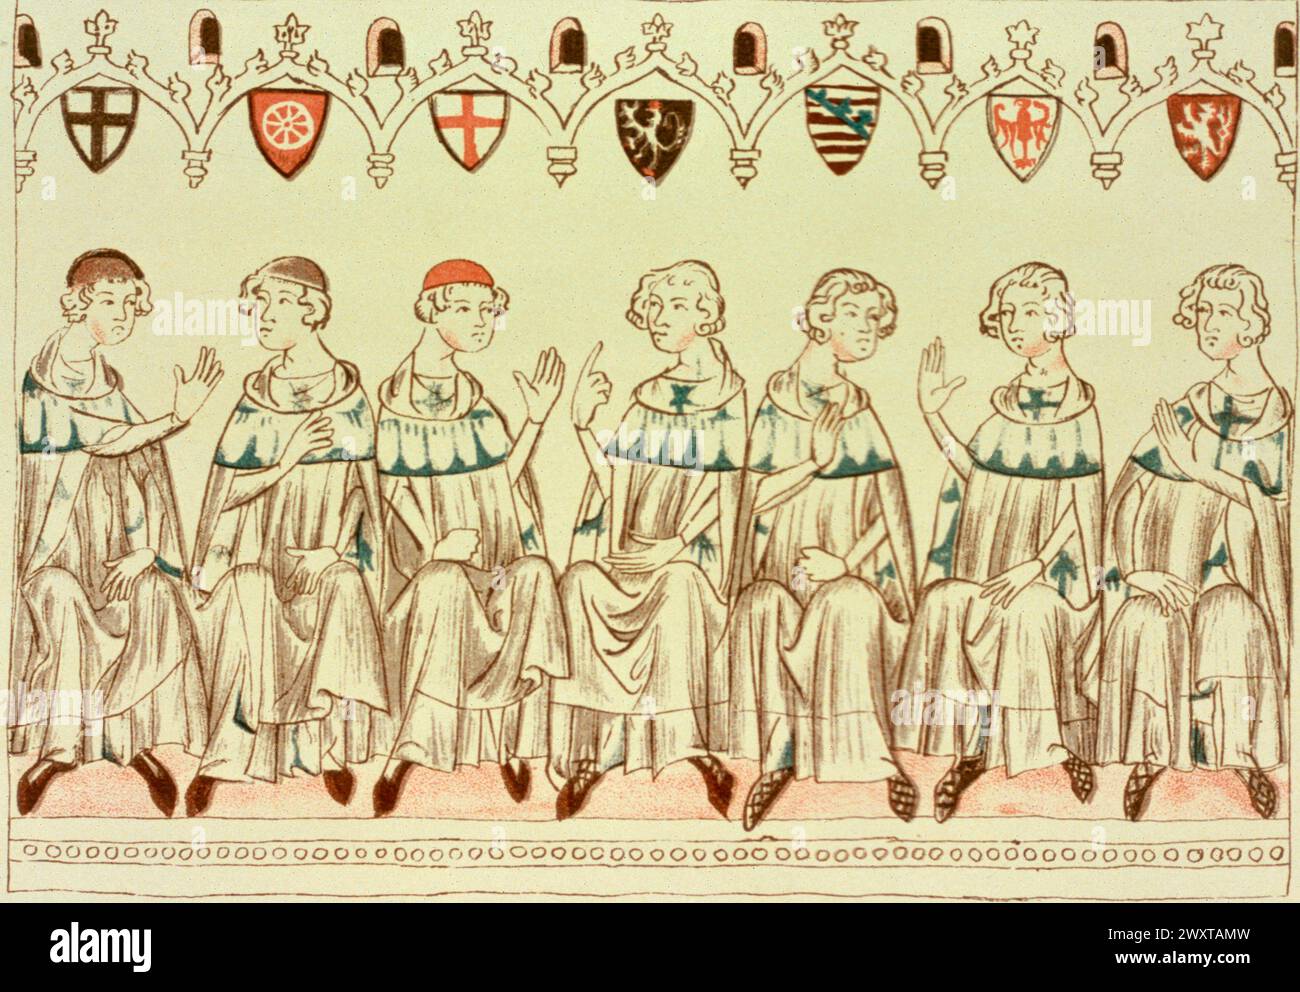 Kurfürsten des Heiligen Römischen Reiches im konzil während der Wahl Heinrichs VII., Illustration aus einer Handschrift, 1300er Jahre Stockfoto